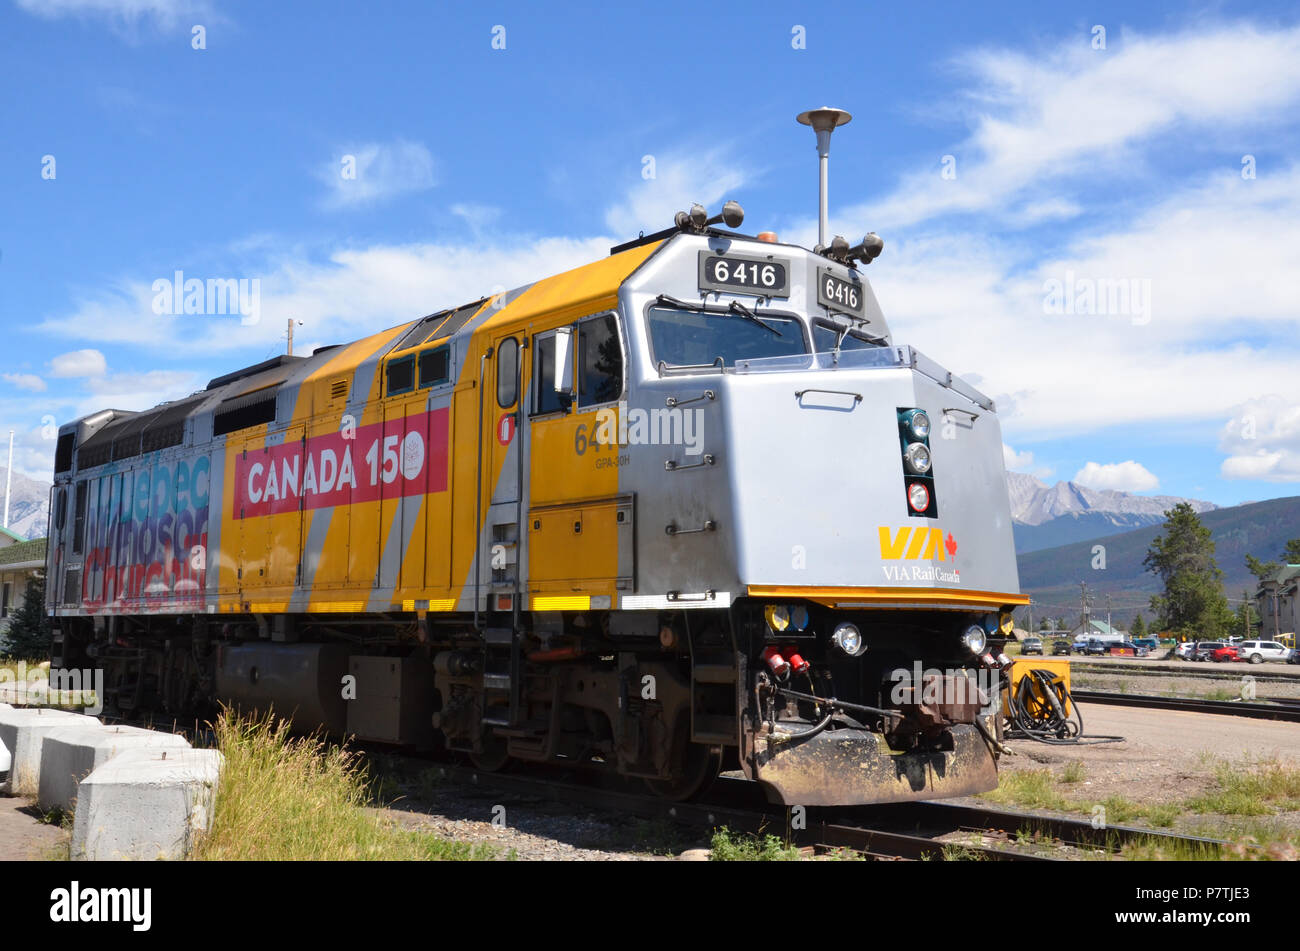 JASPER, AB / CANADA - 25 juillet 2017 : une locomotive avec Canada 150 décoration sur elle repose sur une voie ferrée à Jasper, en Alberta. Banque D'Images